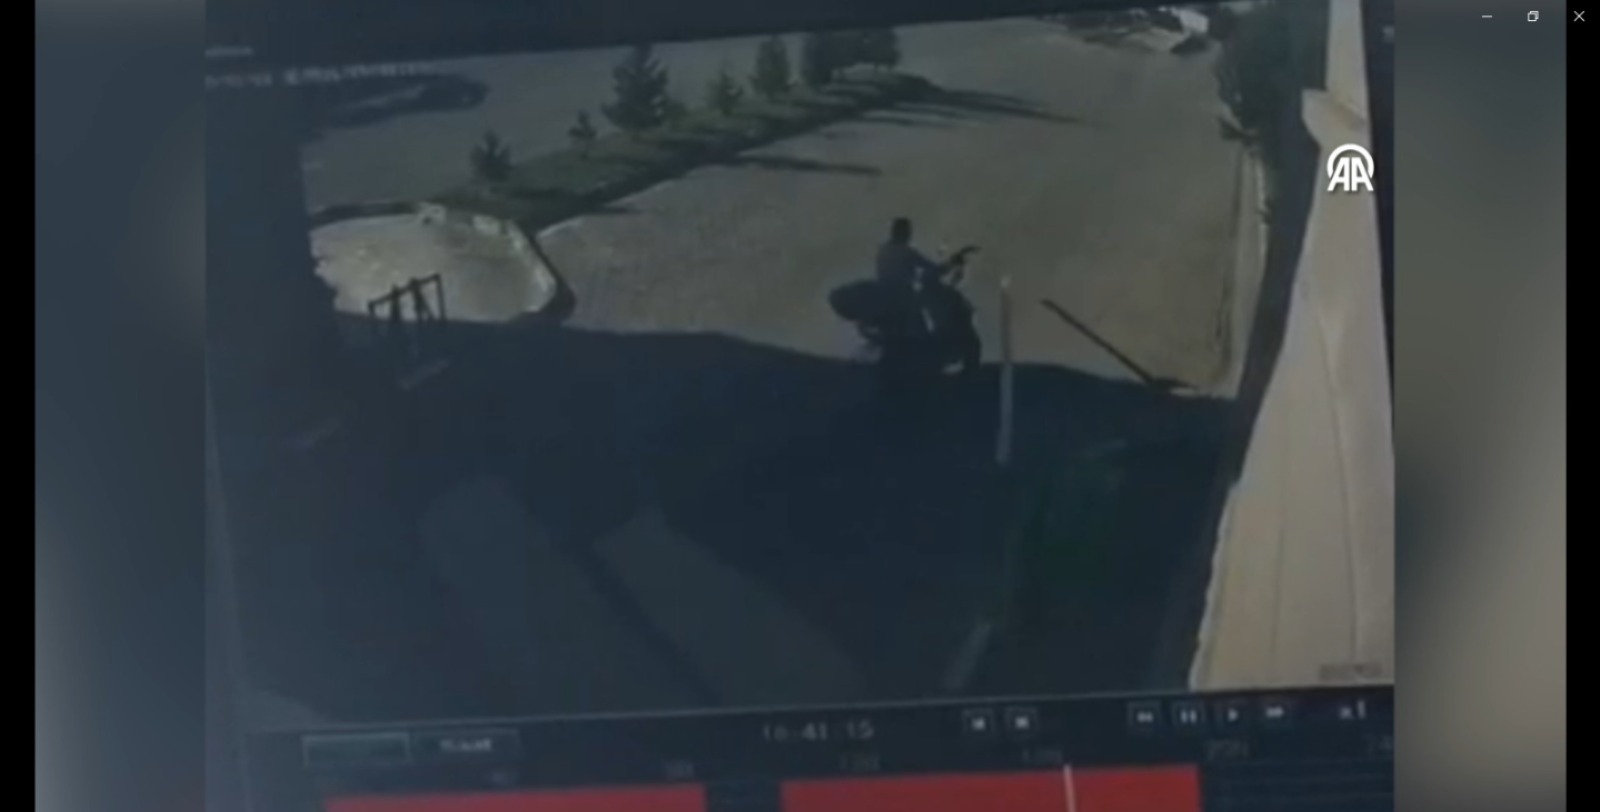 Motosikletin bariyere çarptığı anlar güvenlik kamerasında